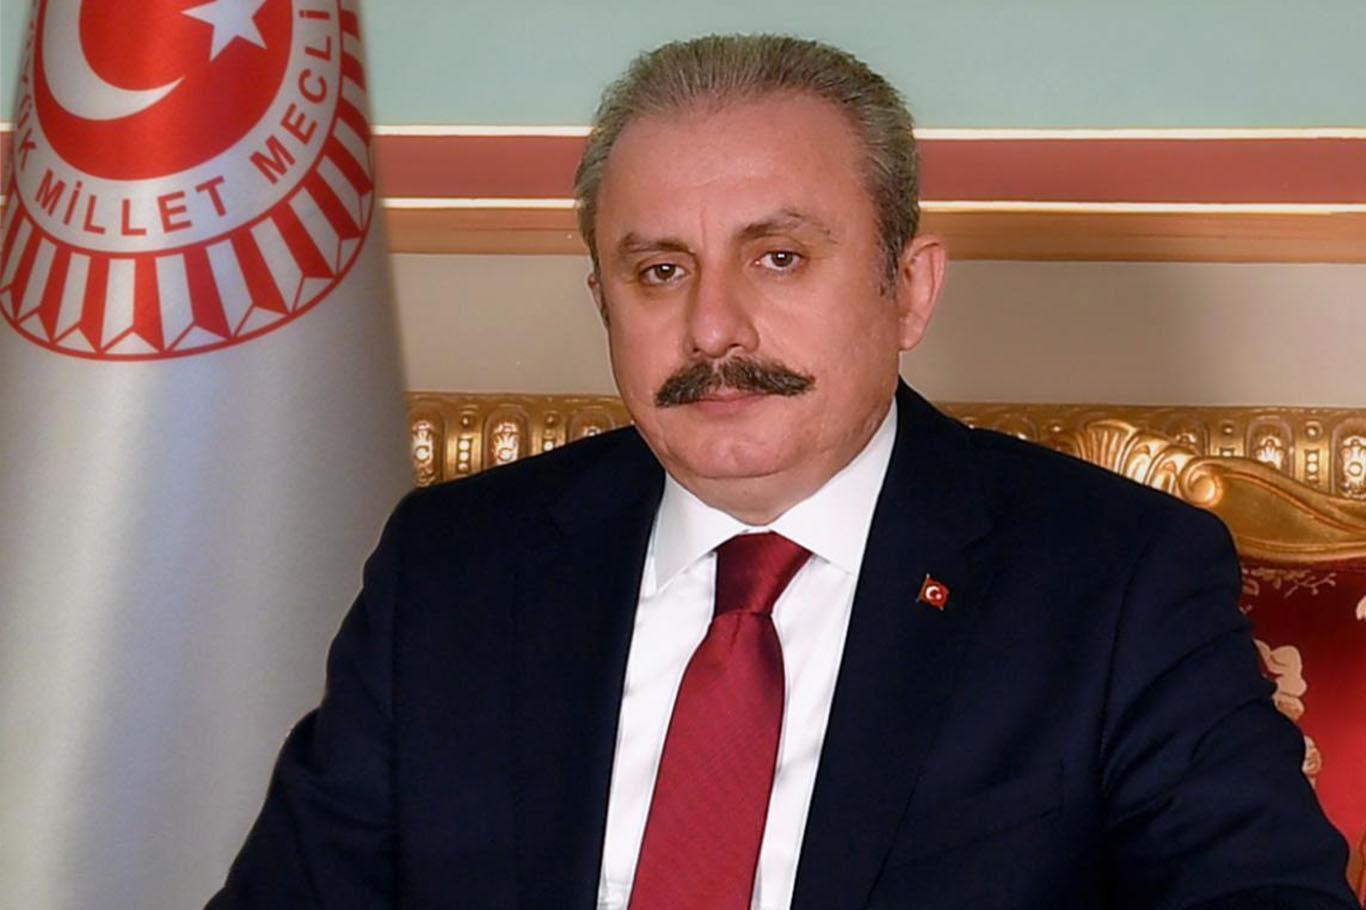 TBMM Başkanı Şentop: "Türkiye pek çok ülkede olduğu gibi Lübnan halkına da el uzatacaktır"